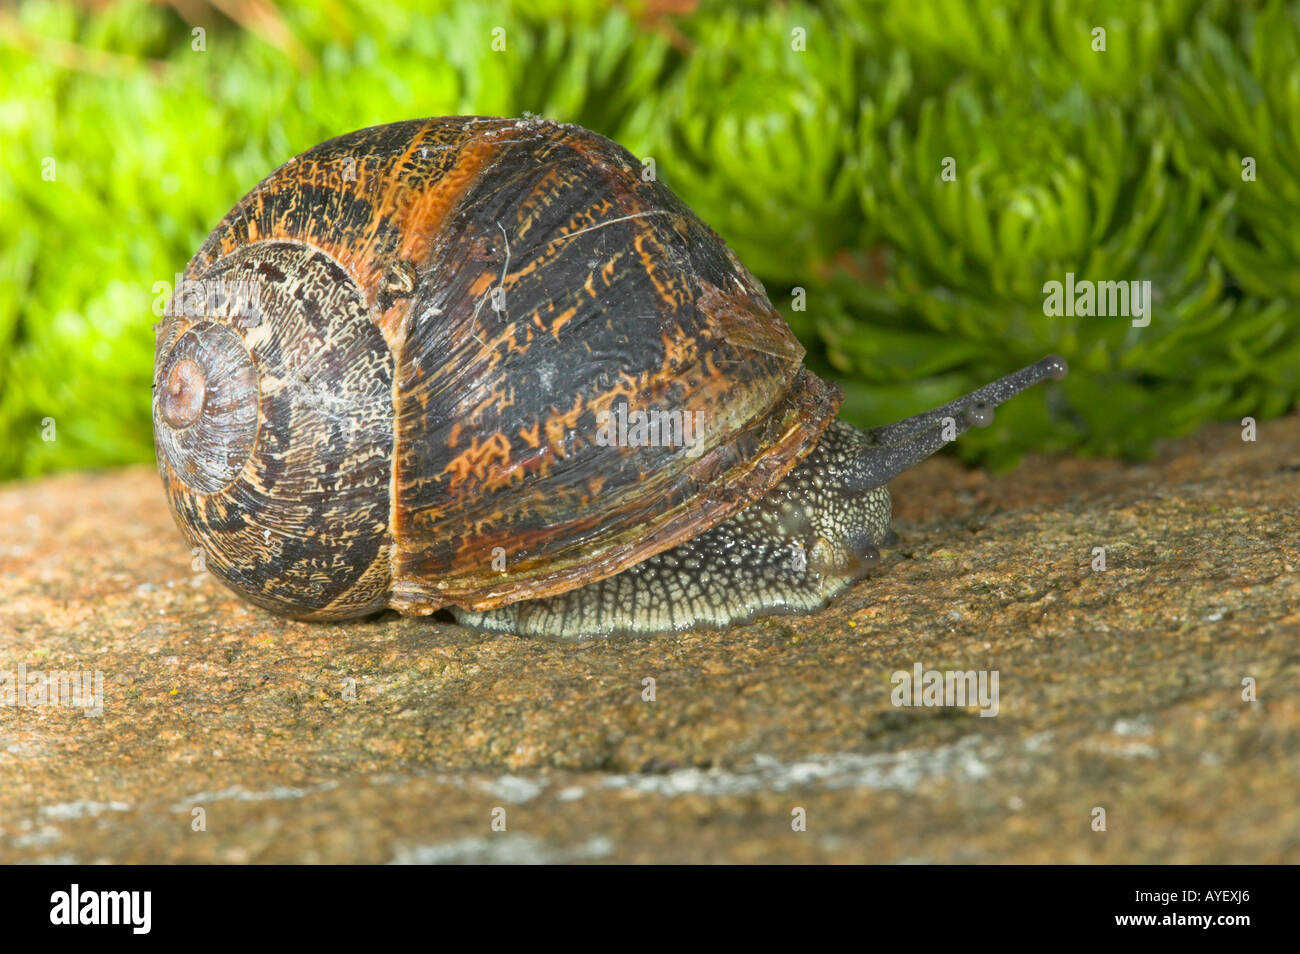 garden snail Stock Photo